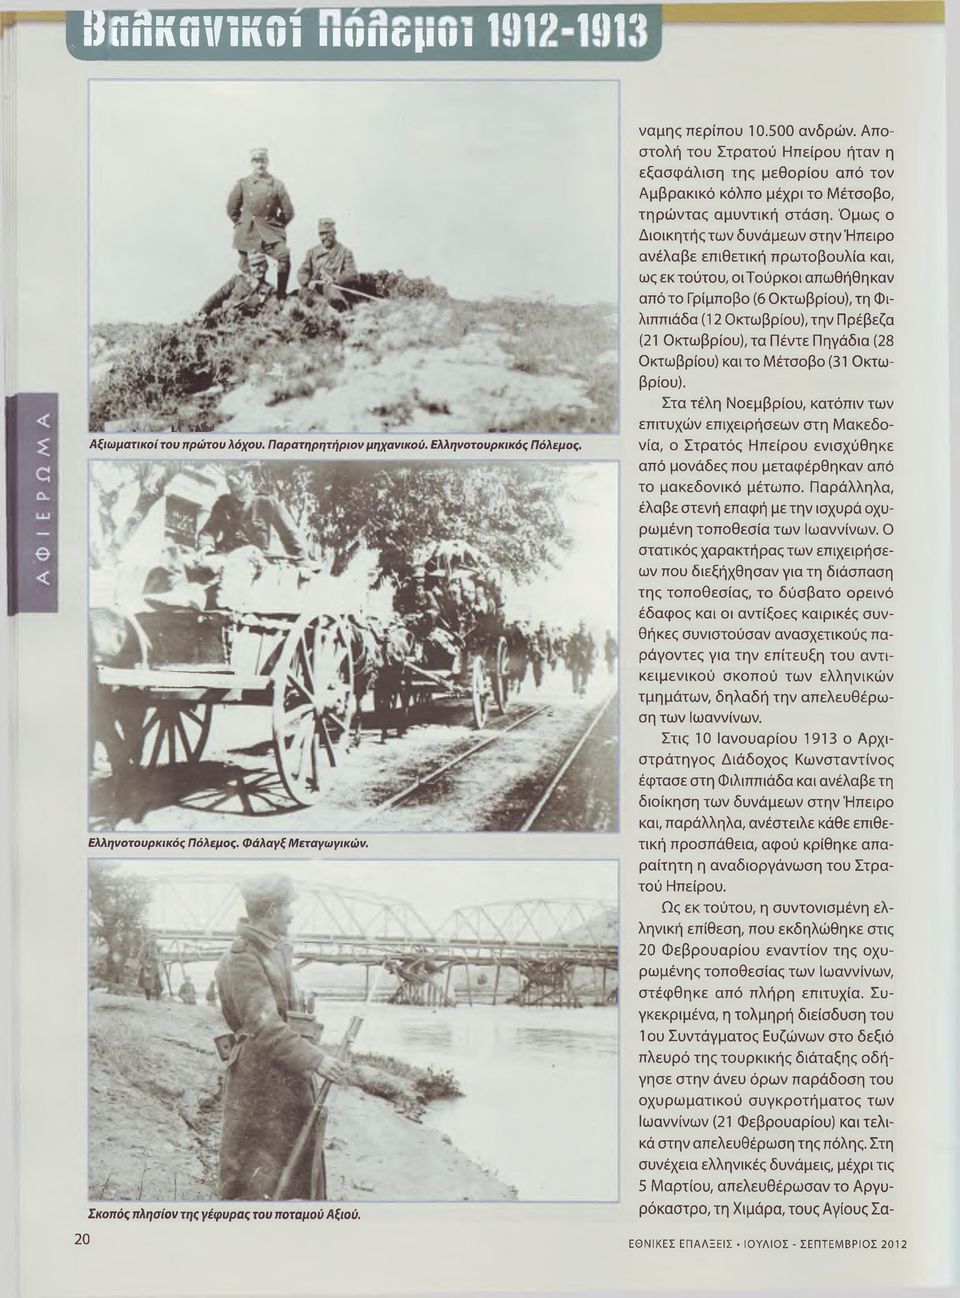 Αποστολή του Στρατού Ηπείρου ήταν η εξασφάλιση της μεθορίου από τον Αμβρακικό κόλπο μέχρι το Μέτσοβο, τηρώντας αμυντική στάση.